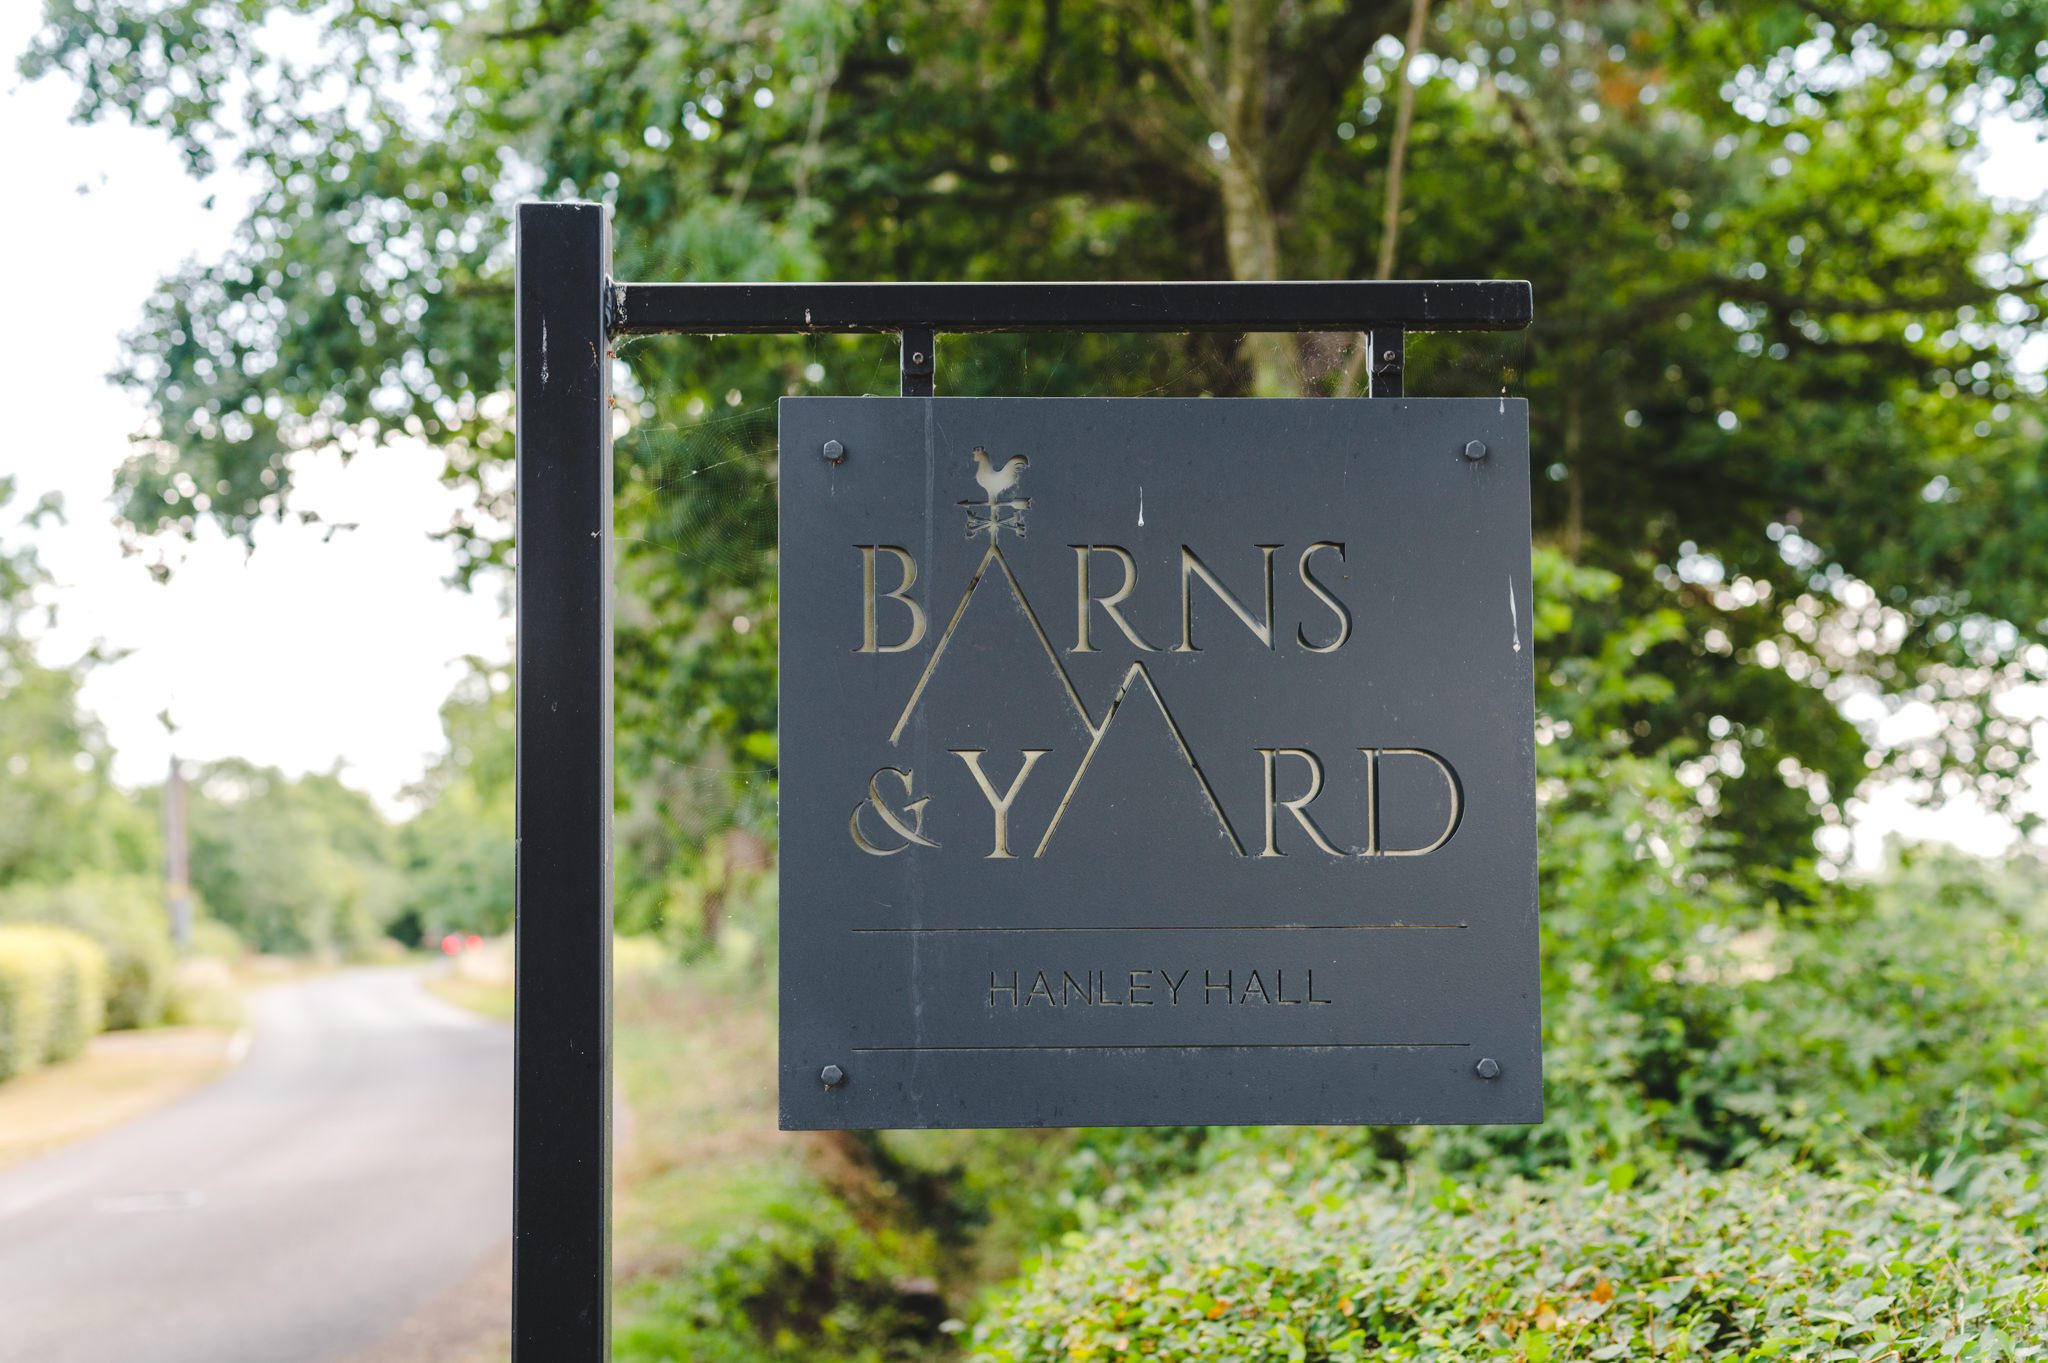 Barns and Yard at Hanley Hall venue sign